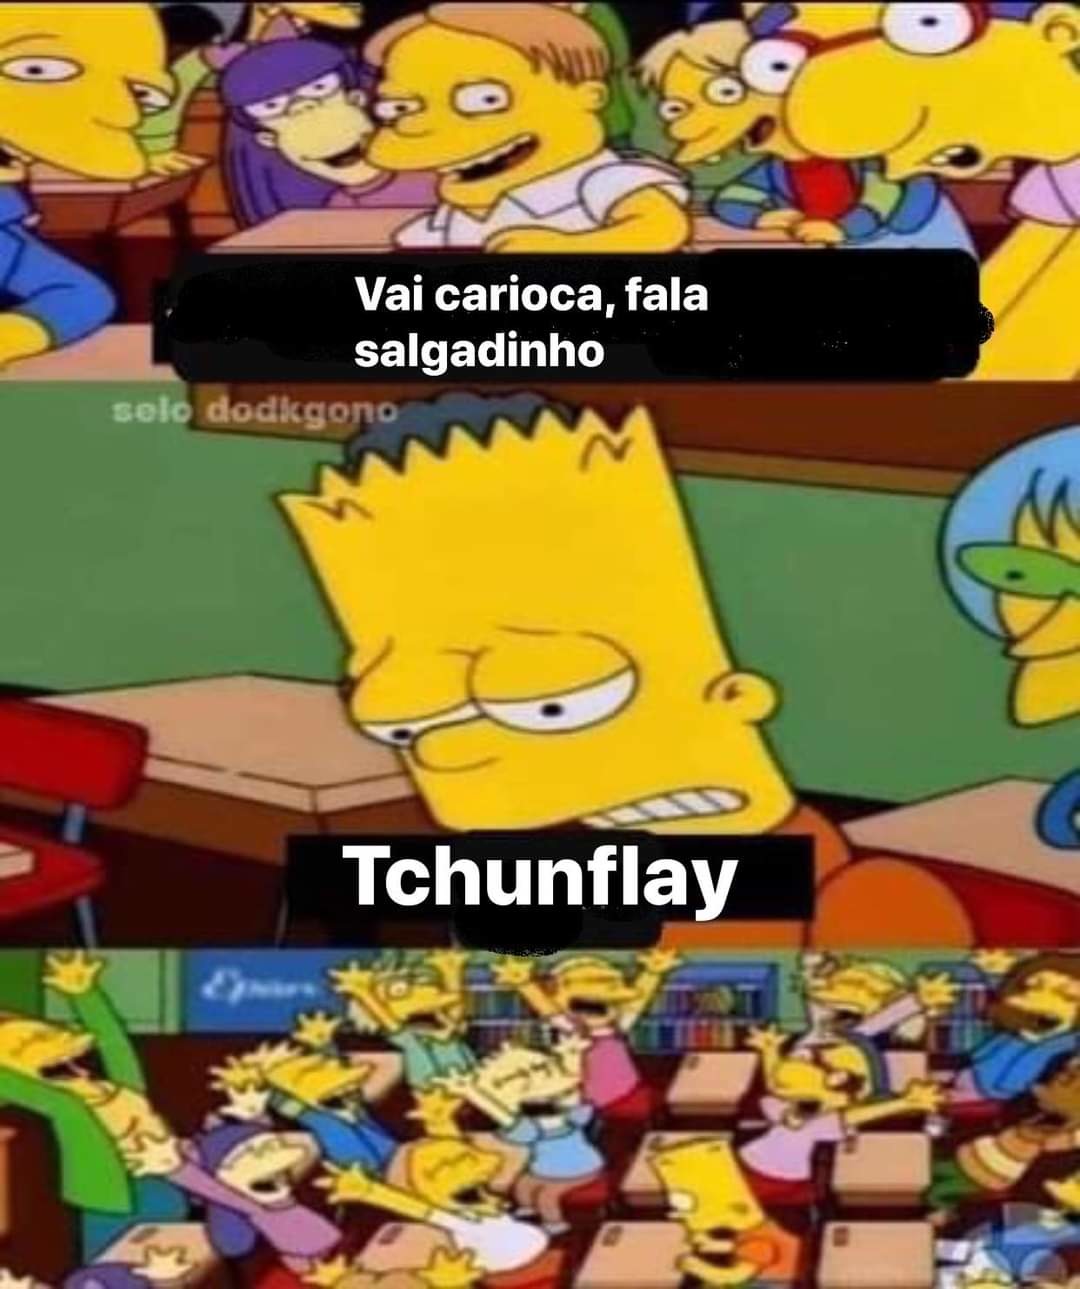 Tchunflay - meme